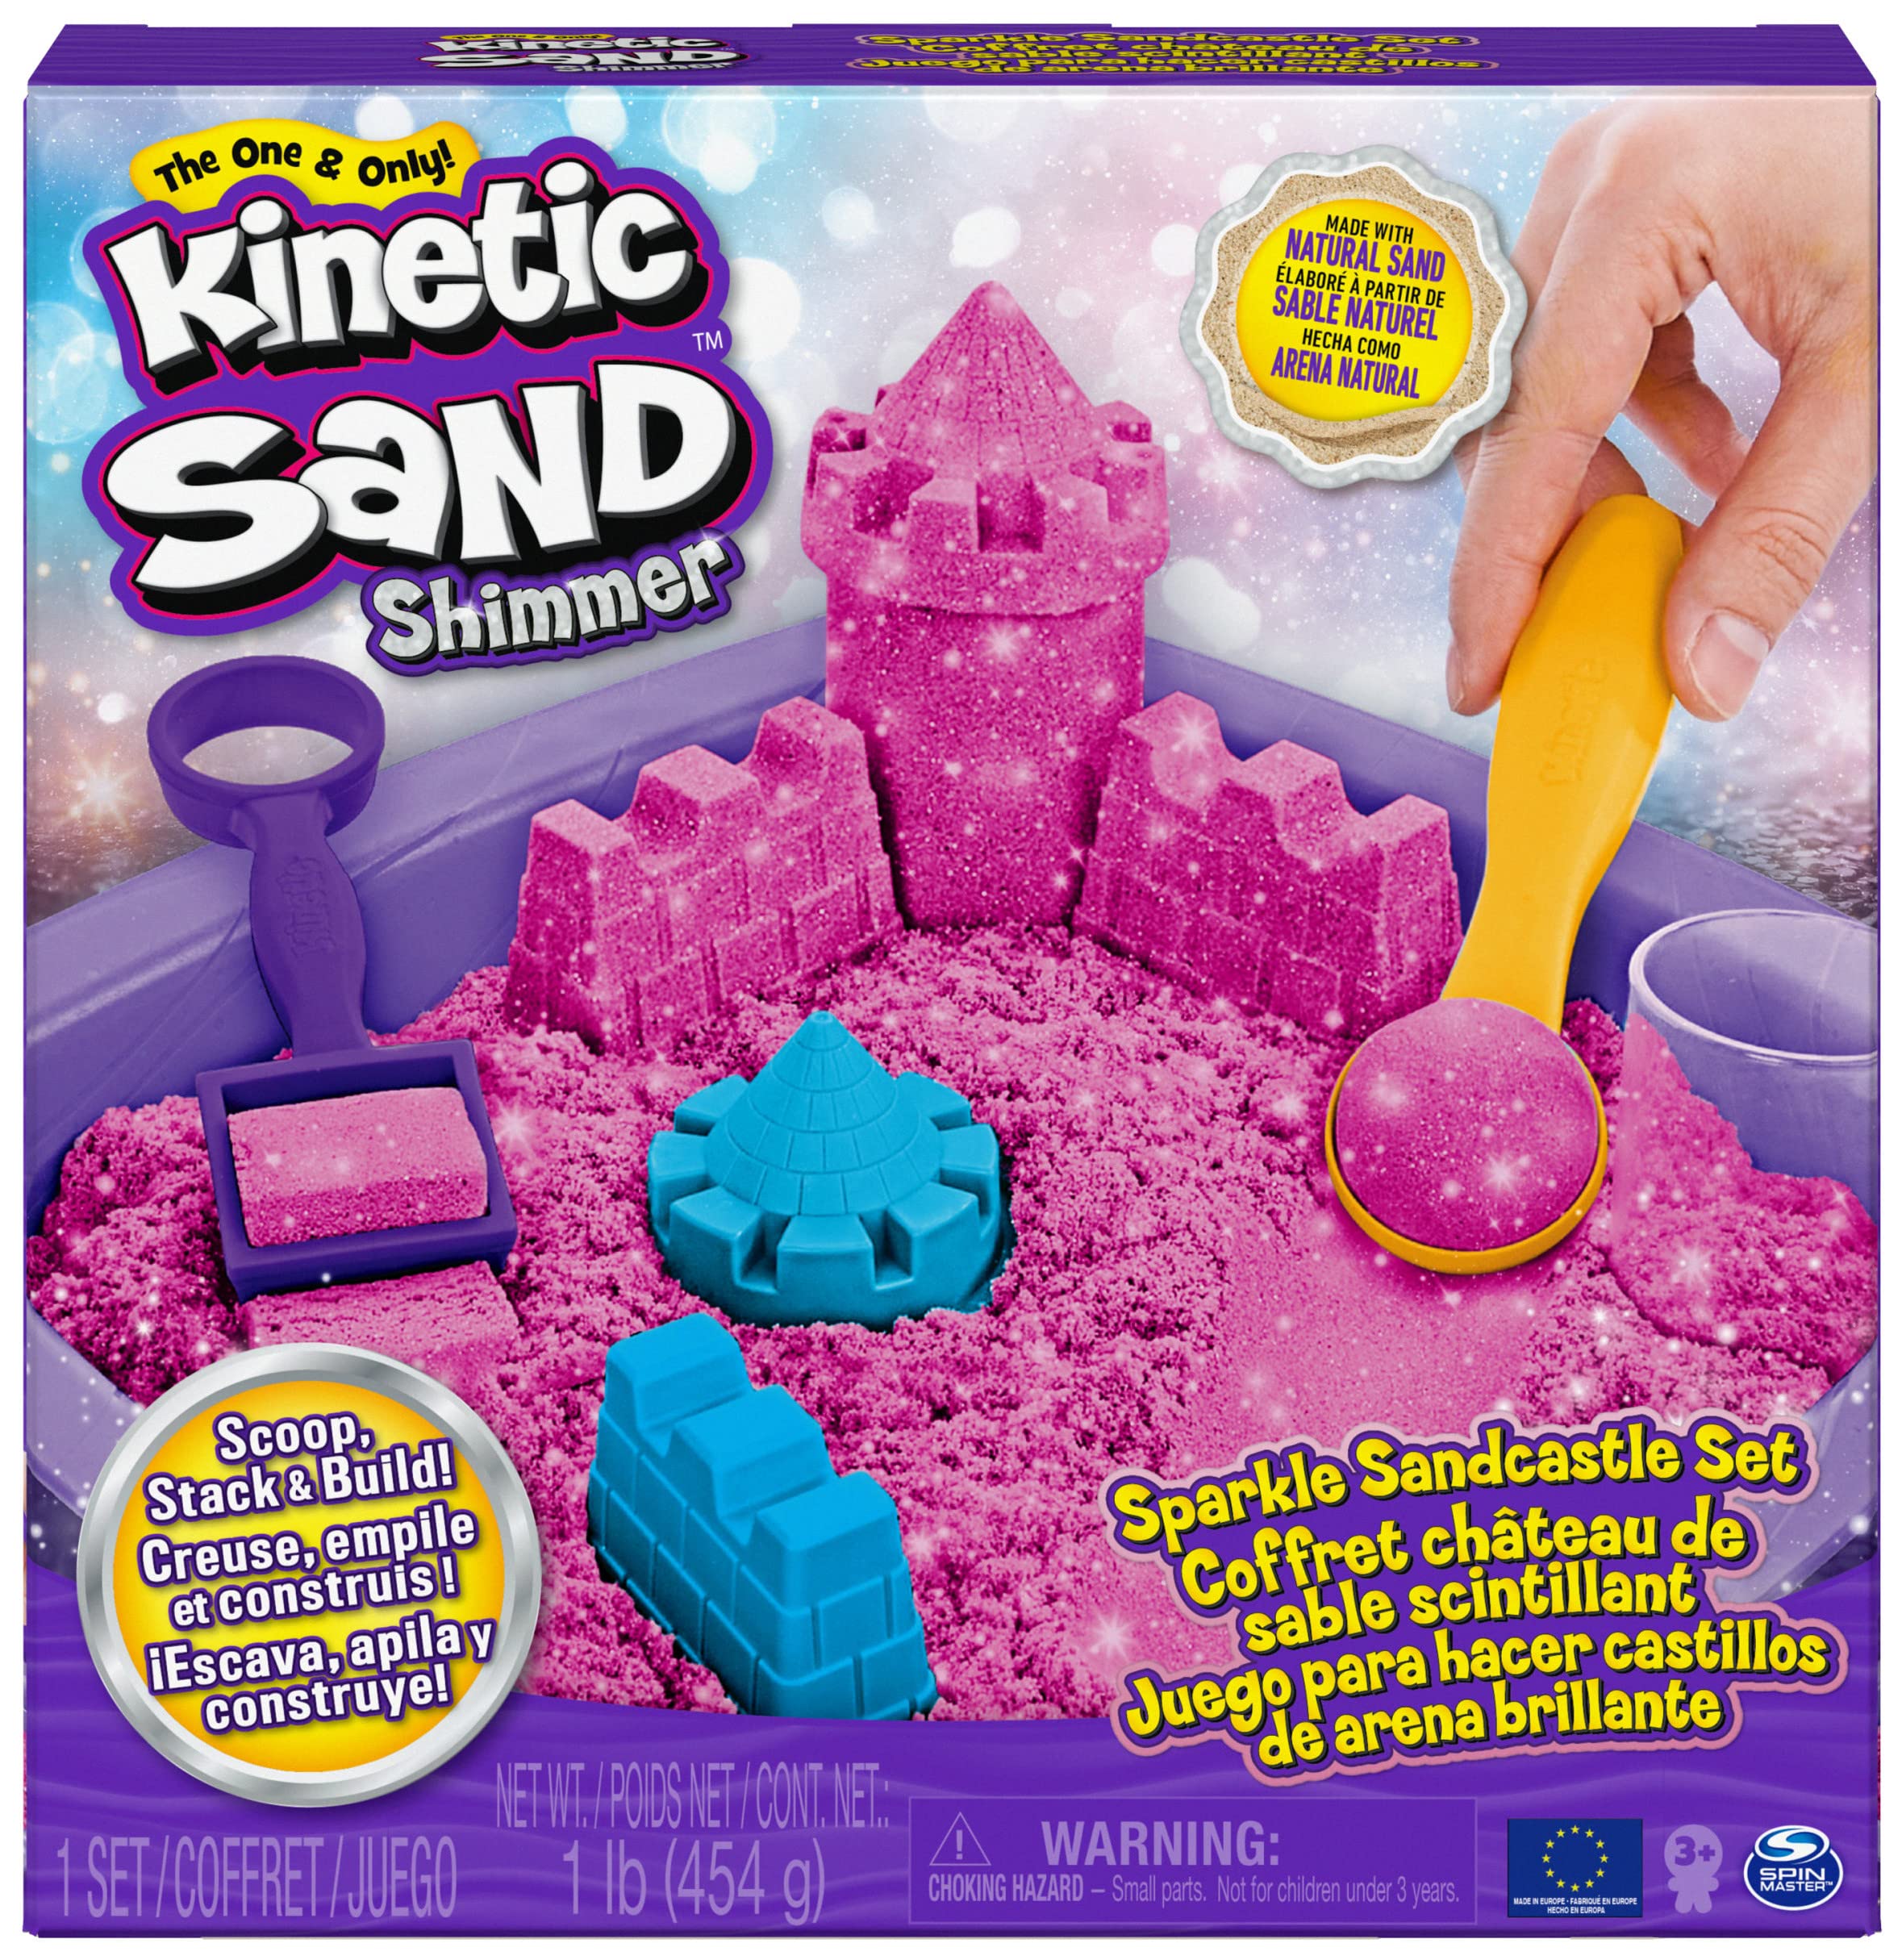 luxe  Kinetic Sand Shimmer, Coffret Château de Sable Scintillant avec 453 g de Scintillant Rose, 3 moules et 2 Outils, Sable pour Jeu en intérieur Non Toxique pour Les Enfants à partir de 3 Ans N3OL7BuRl Boutique